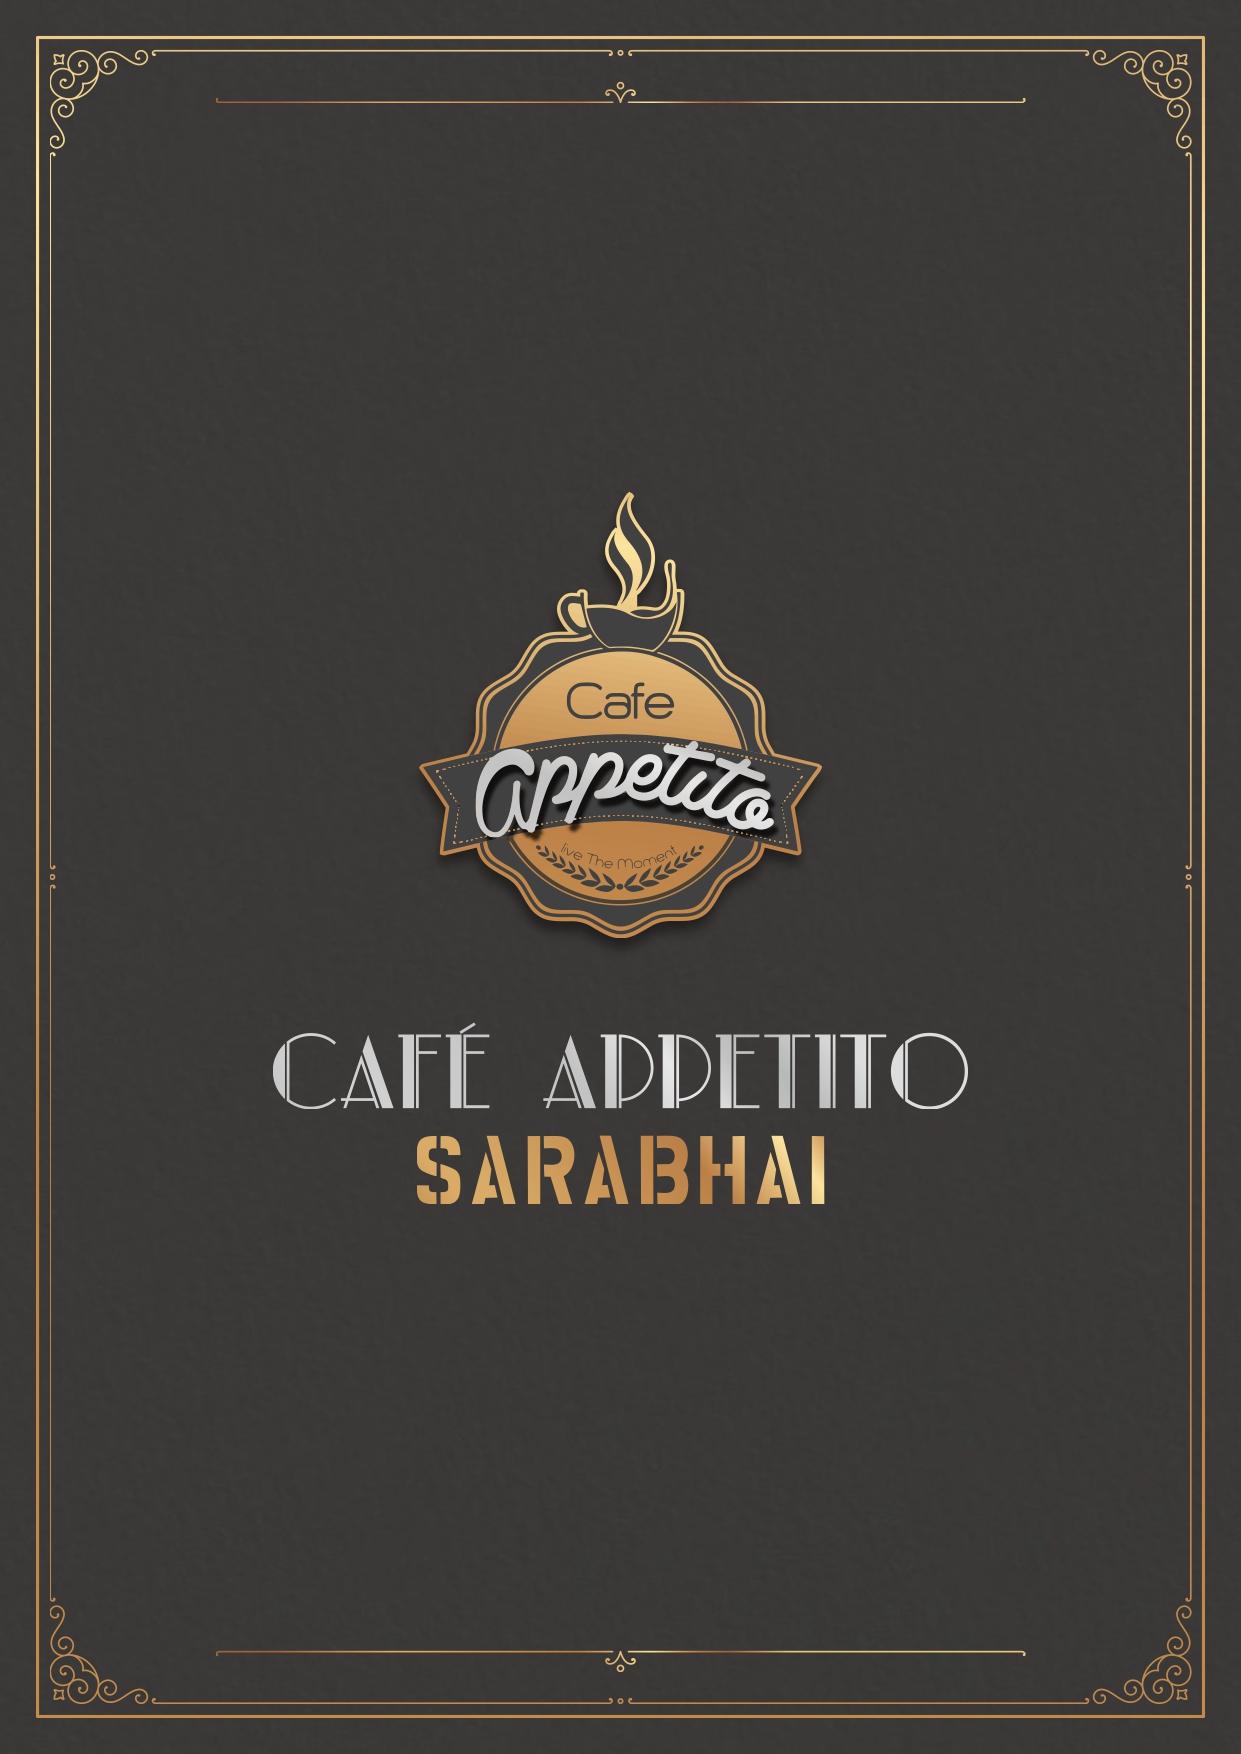 Cafe Appetito - Sarabhai